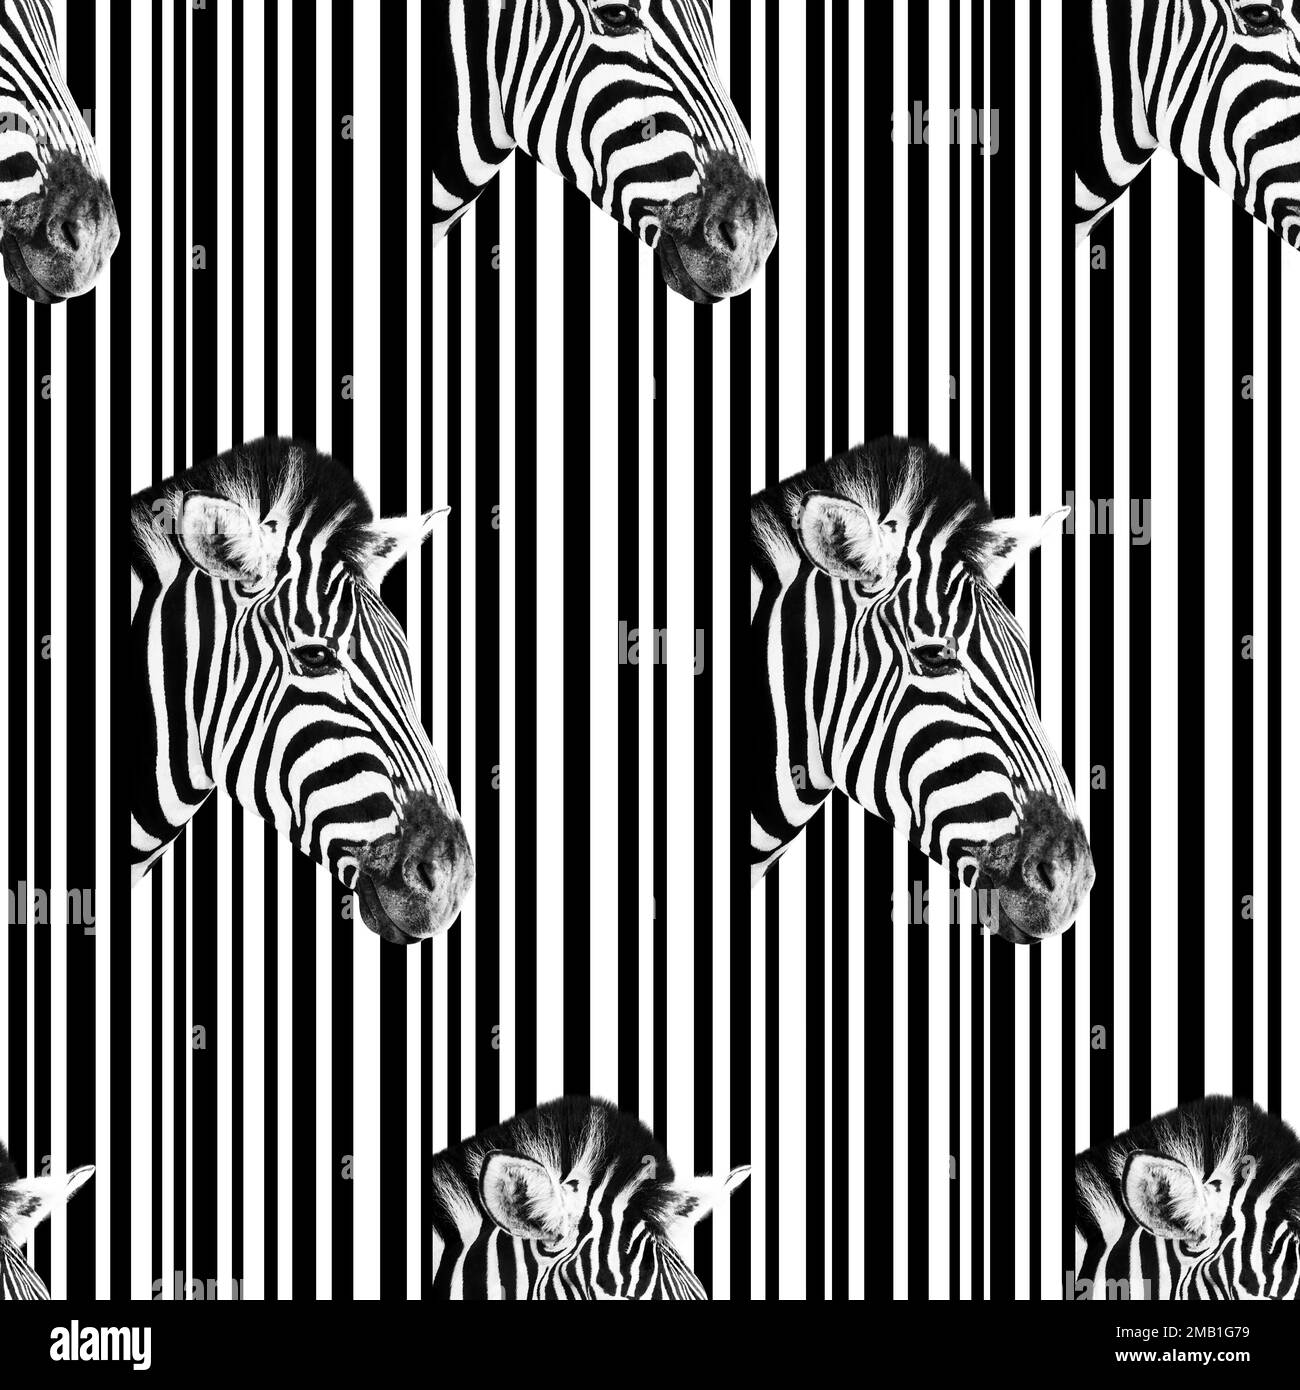 Detail eines Zebrakopfes auf einem abstrakten weiß-schwarz gestreiften Hintergrund. Nahtloses Muster. Stockfoto